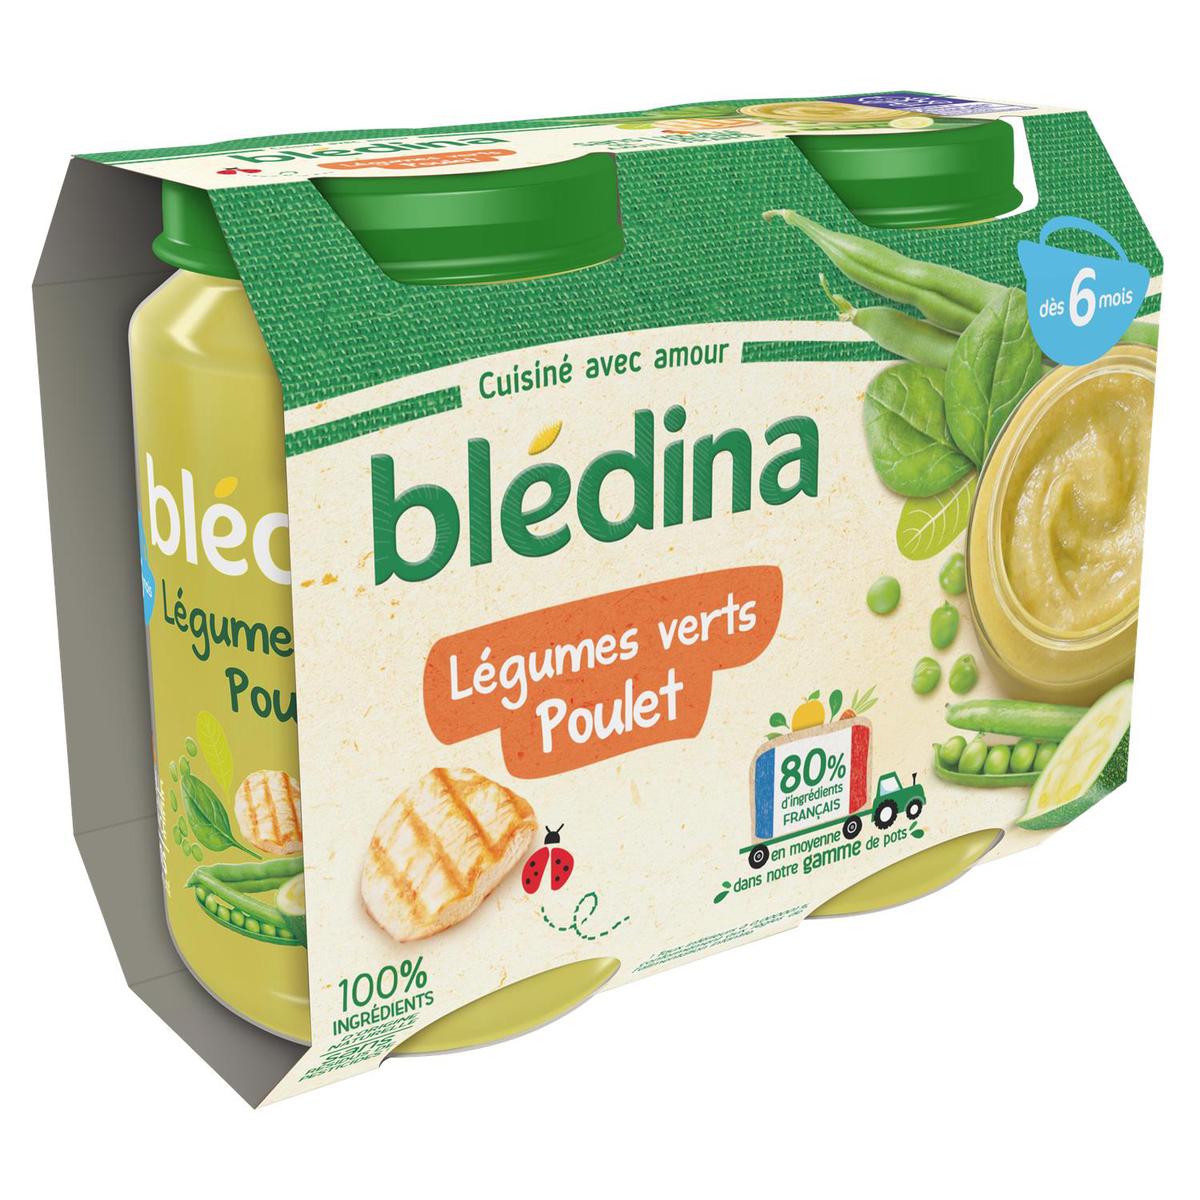 BLEDINA Petit pot légumes verts poulet dès 6 mois 2x200g pas cher 